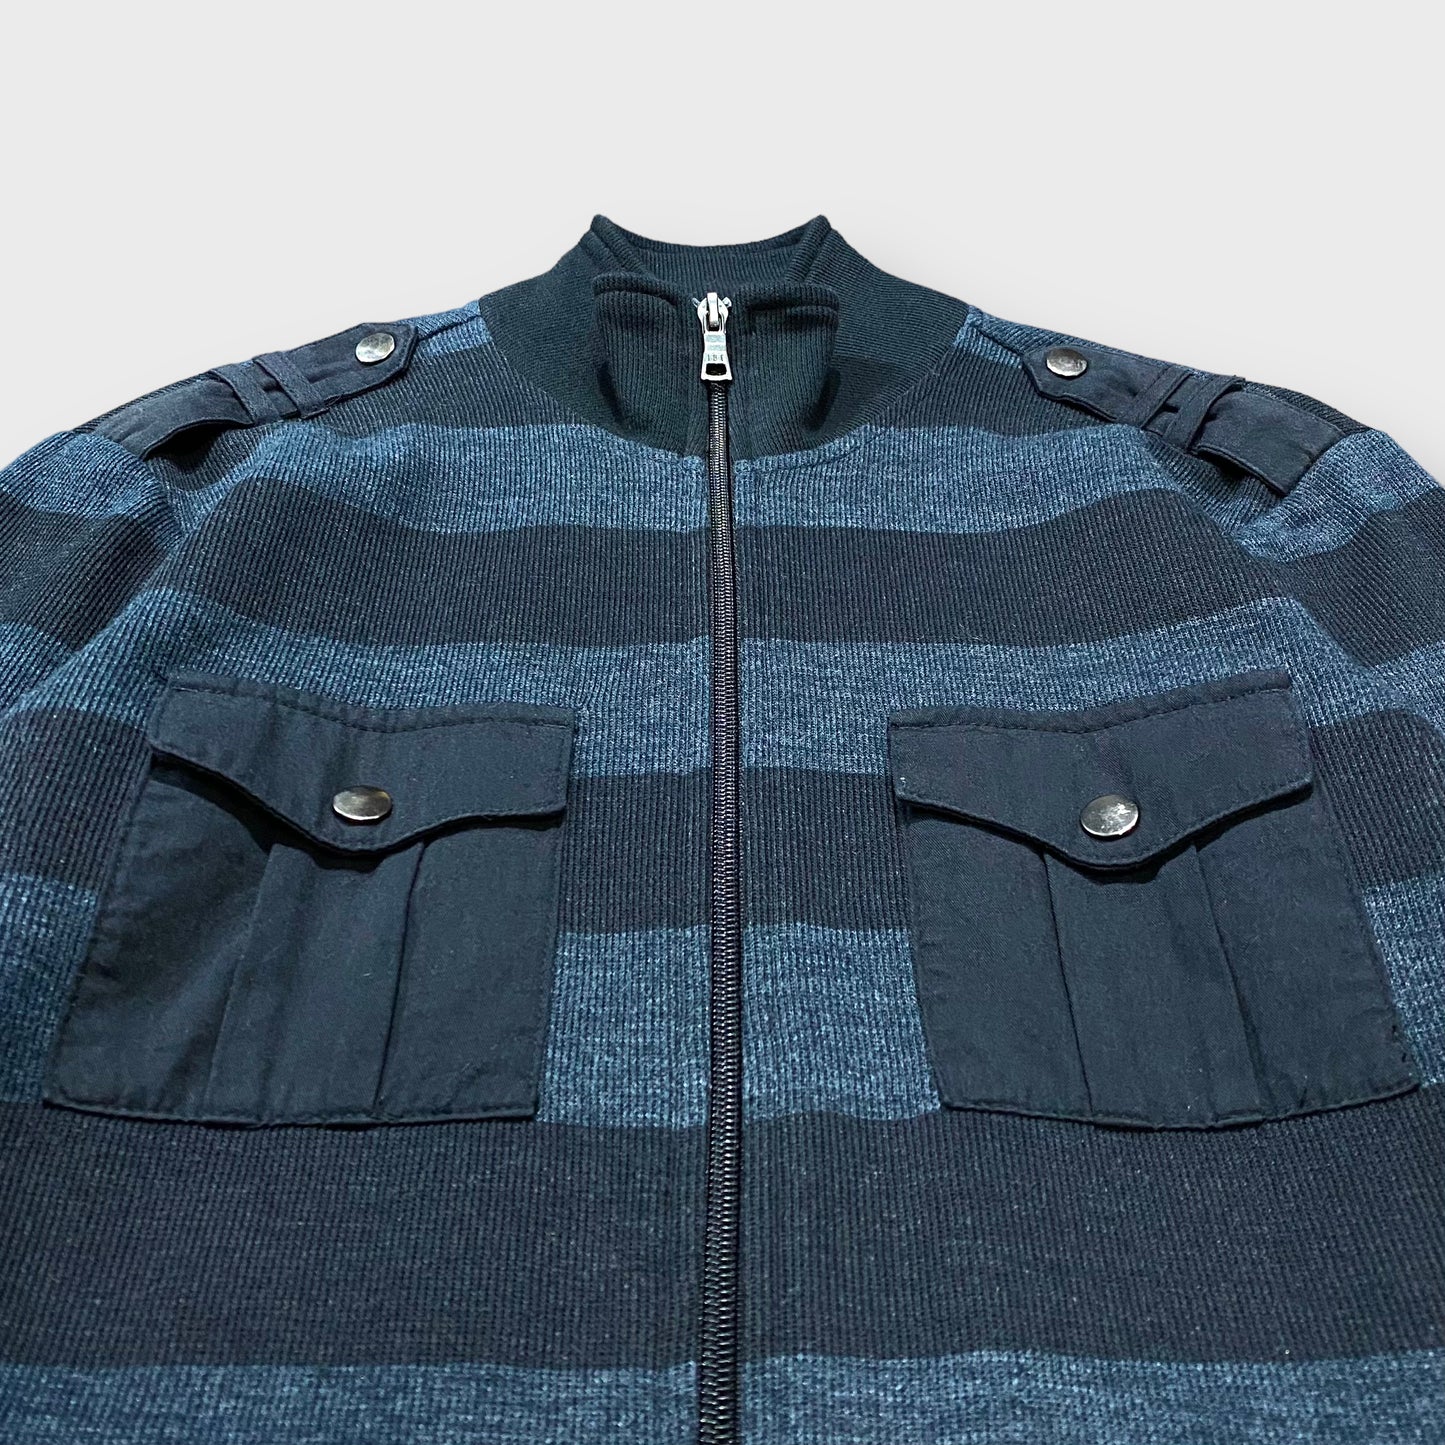 Border pattern high-neck knit jacket